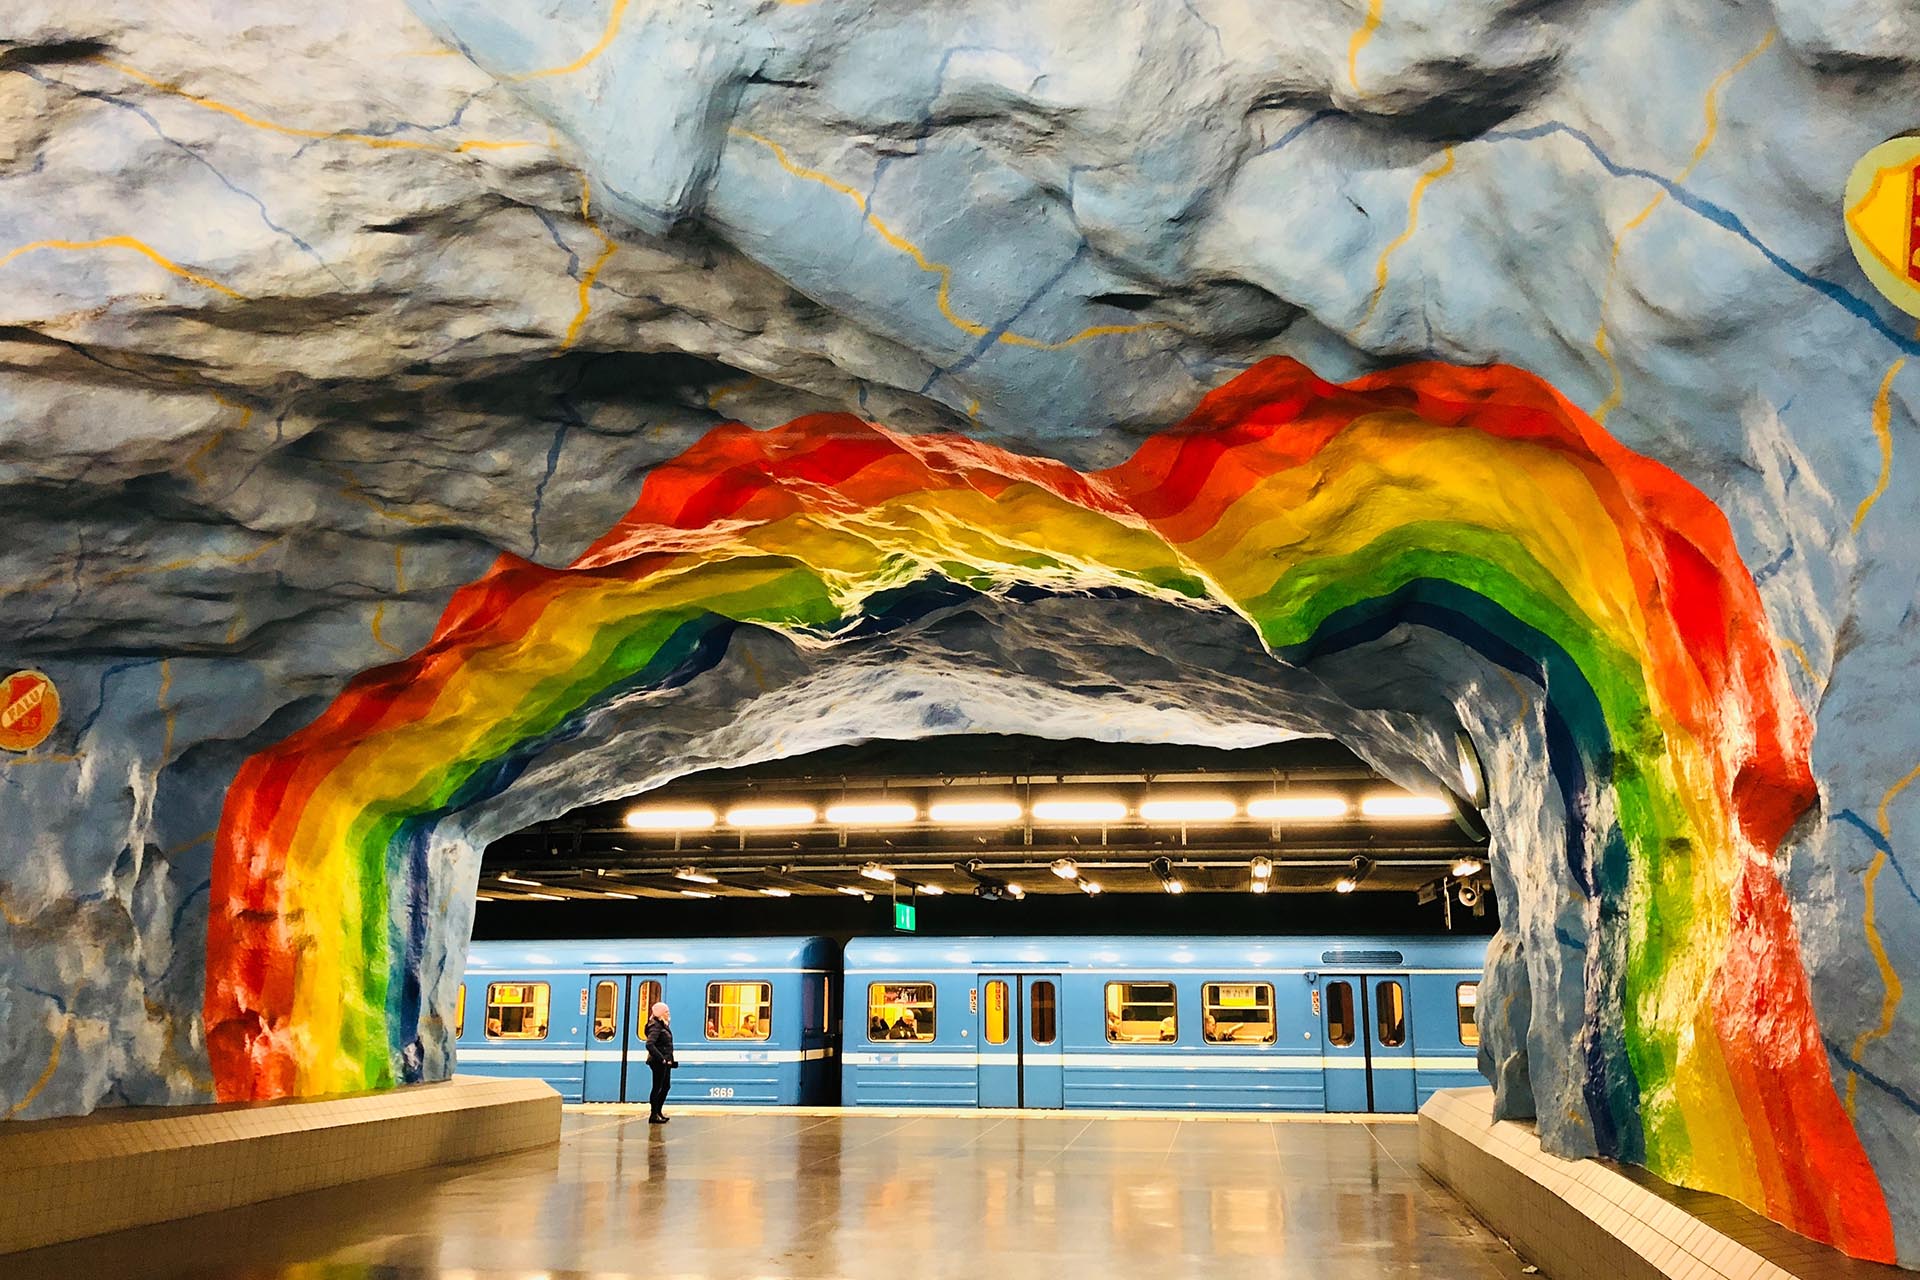 ストックホルムの地下鉄駅「Stadion 駅（スタジアム駅）」　スウェーデンの風景